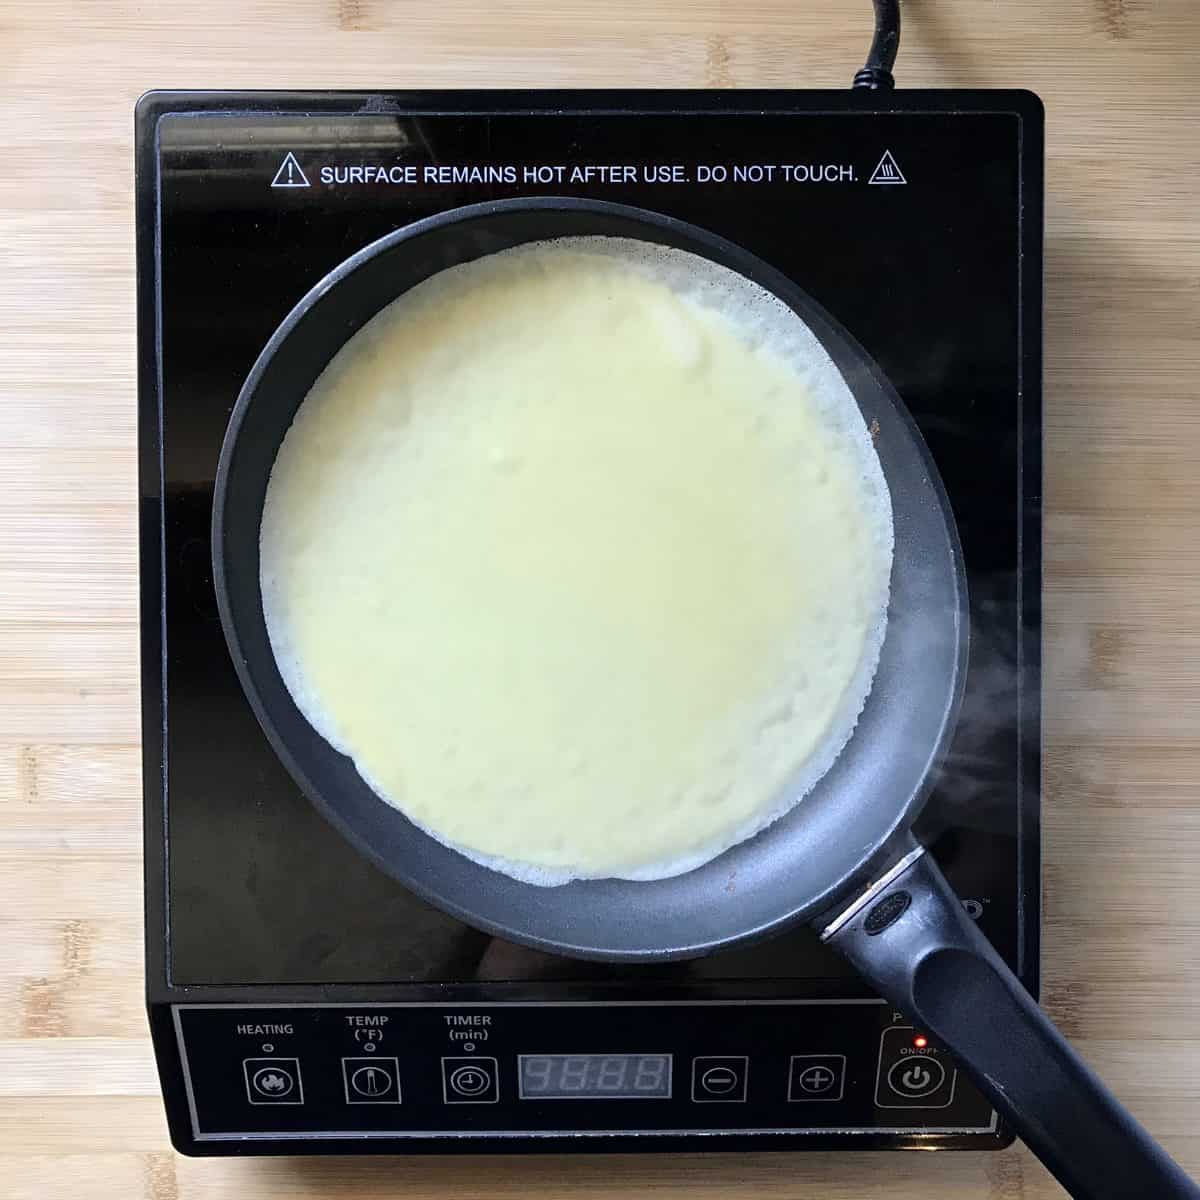 Crepe batter in a crepe pan.